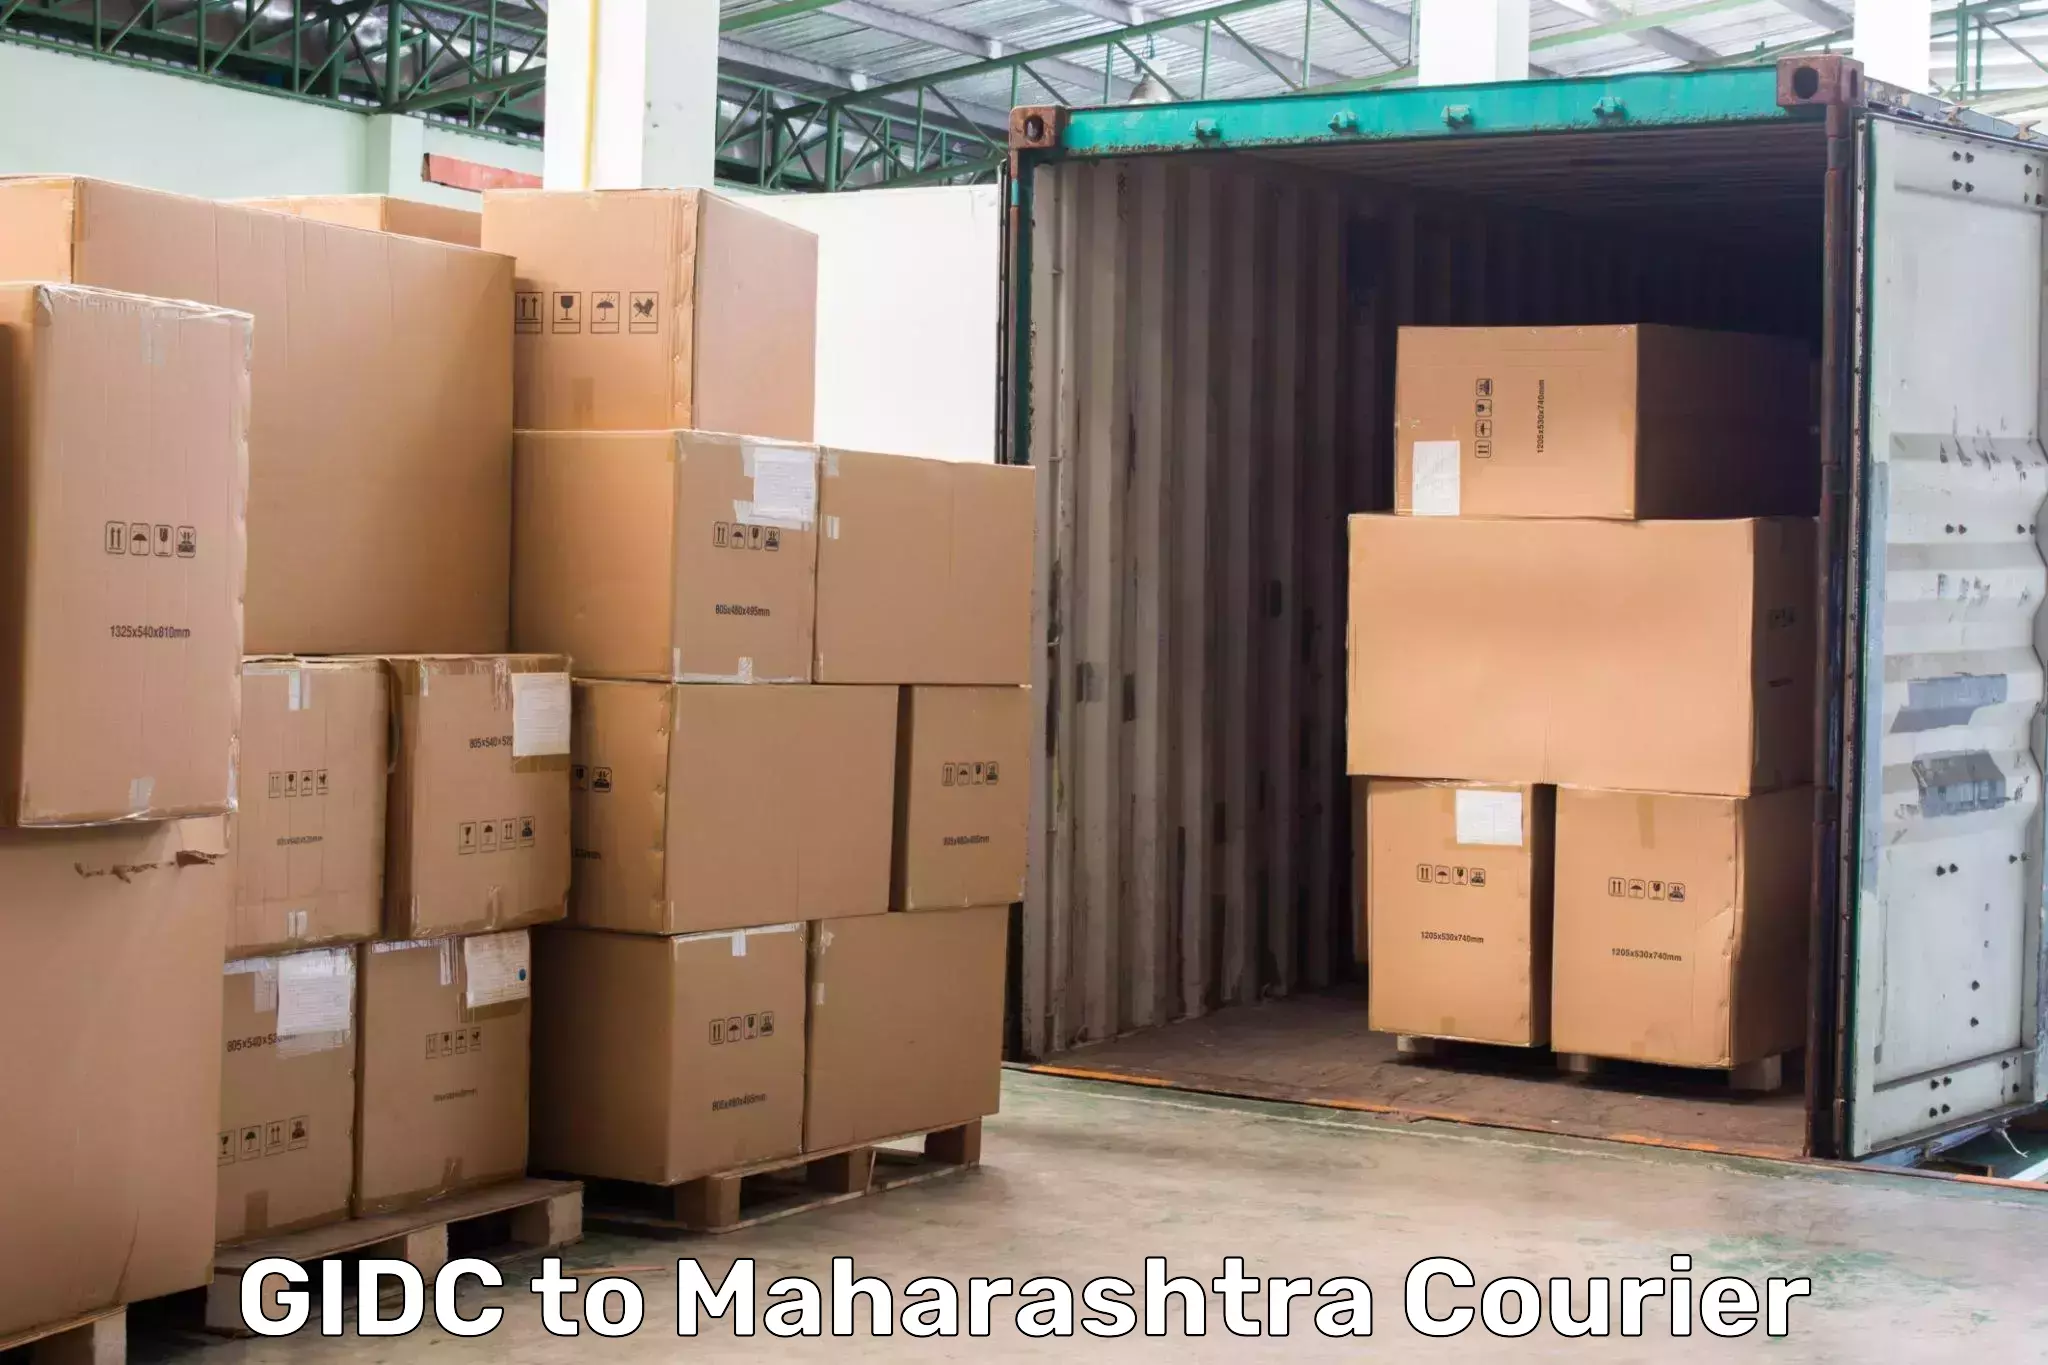 24-hour courier service GIDC to Maharashtra